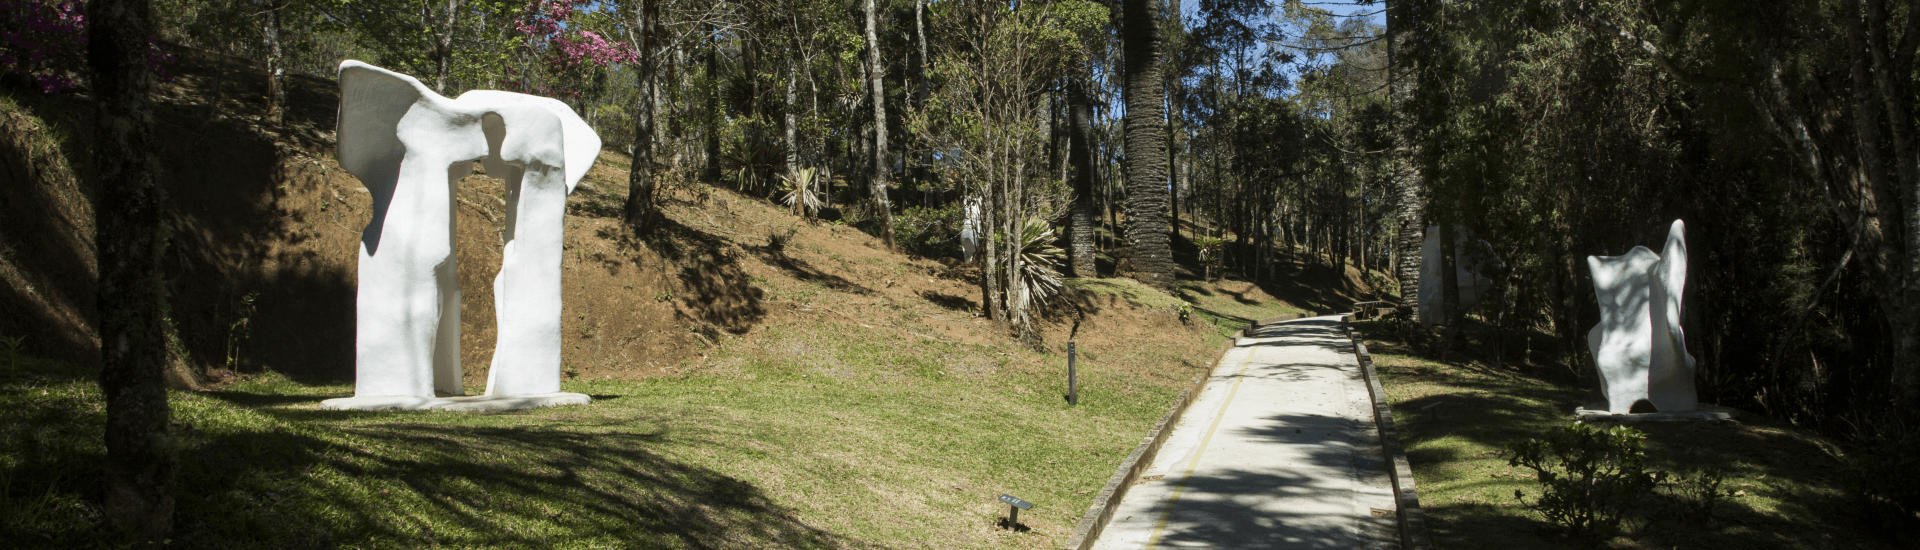 A imagem mostra uma alameda do Museu Felícia Leirner onde ao lado direto e esquerdo há esculturas brancas posicionadas em meio a natureza.